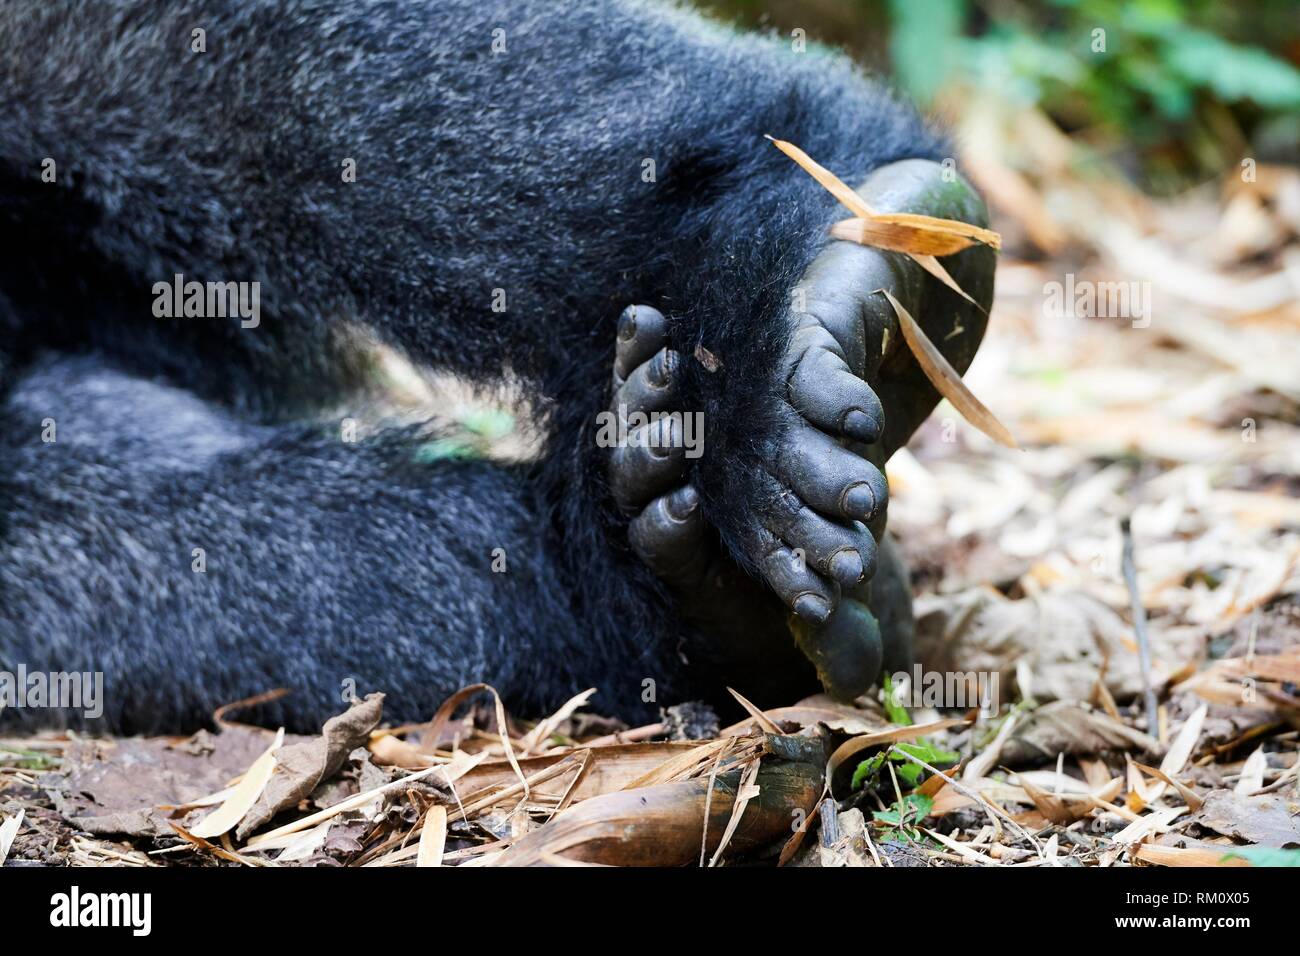 A proximité à pied de gorille de montagne (Gorilla beringei beringei) Le Parc National des Virunga, au Nord Kivu, République démocratique du Congo, l'Afrique. Banque D'Images